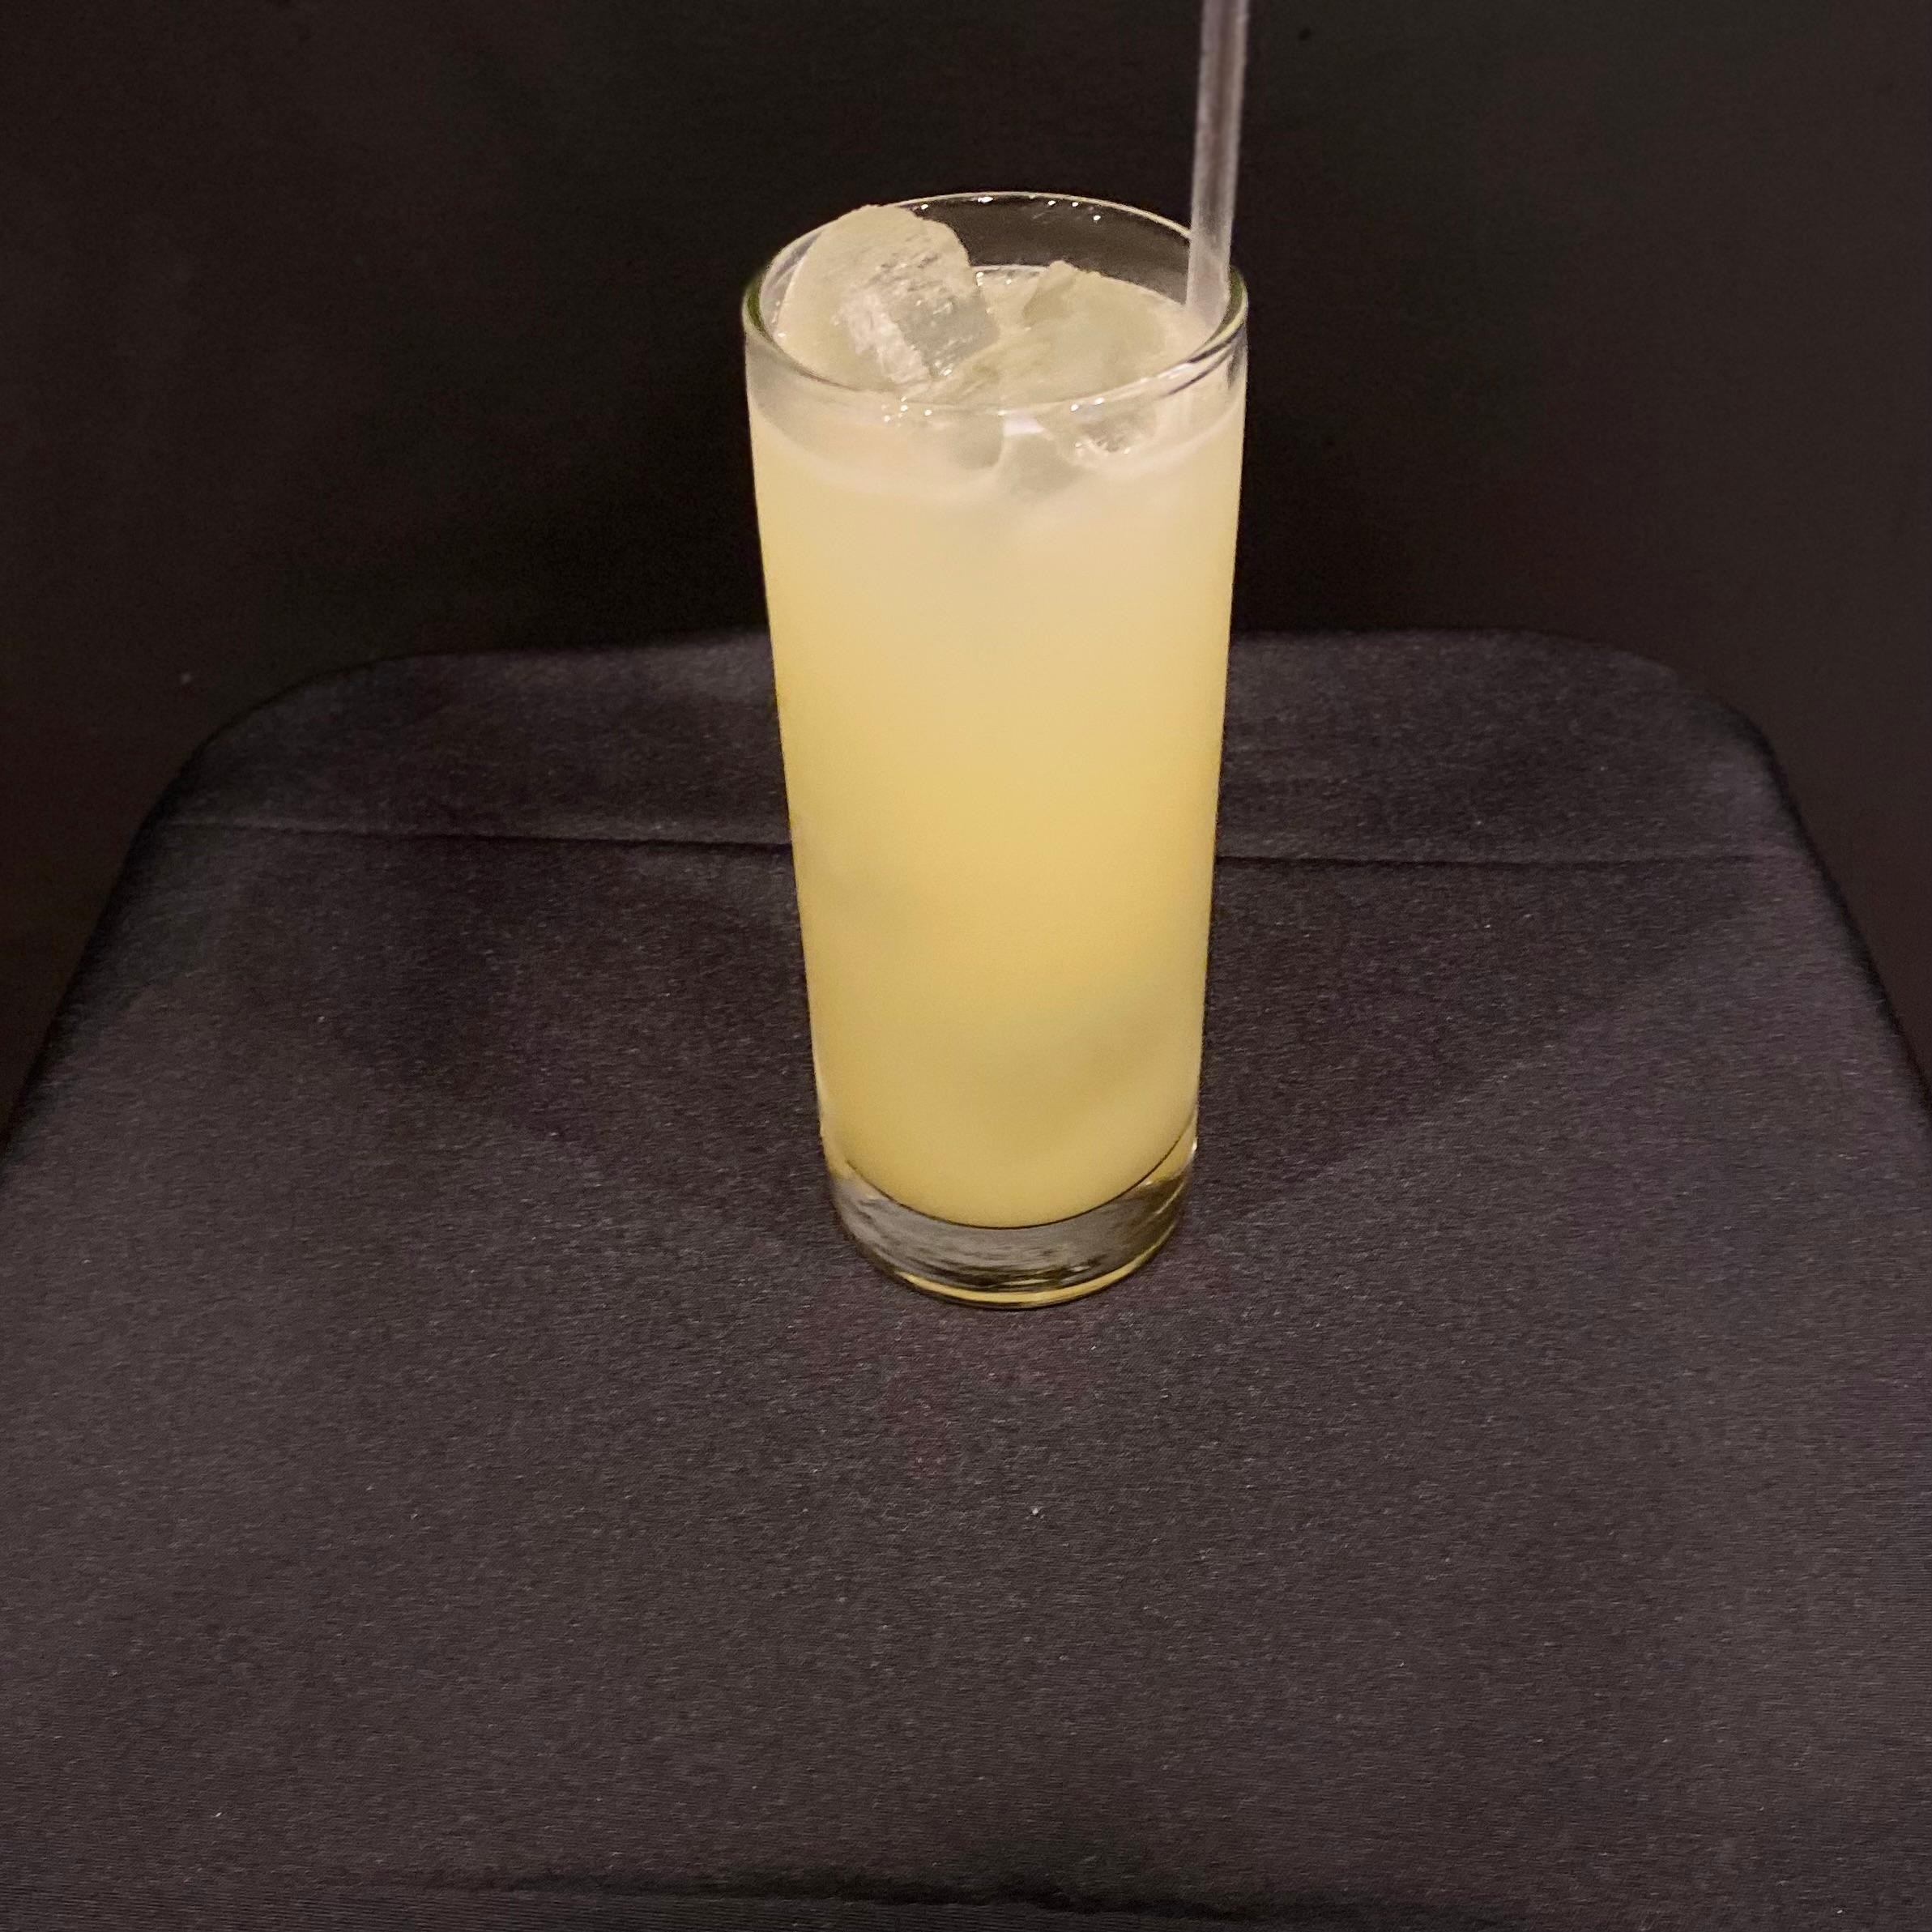 Island Lemonade